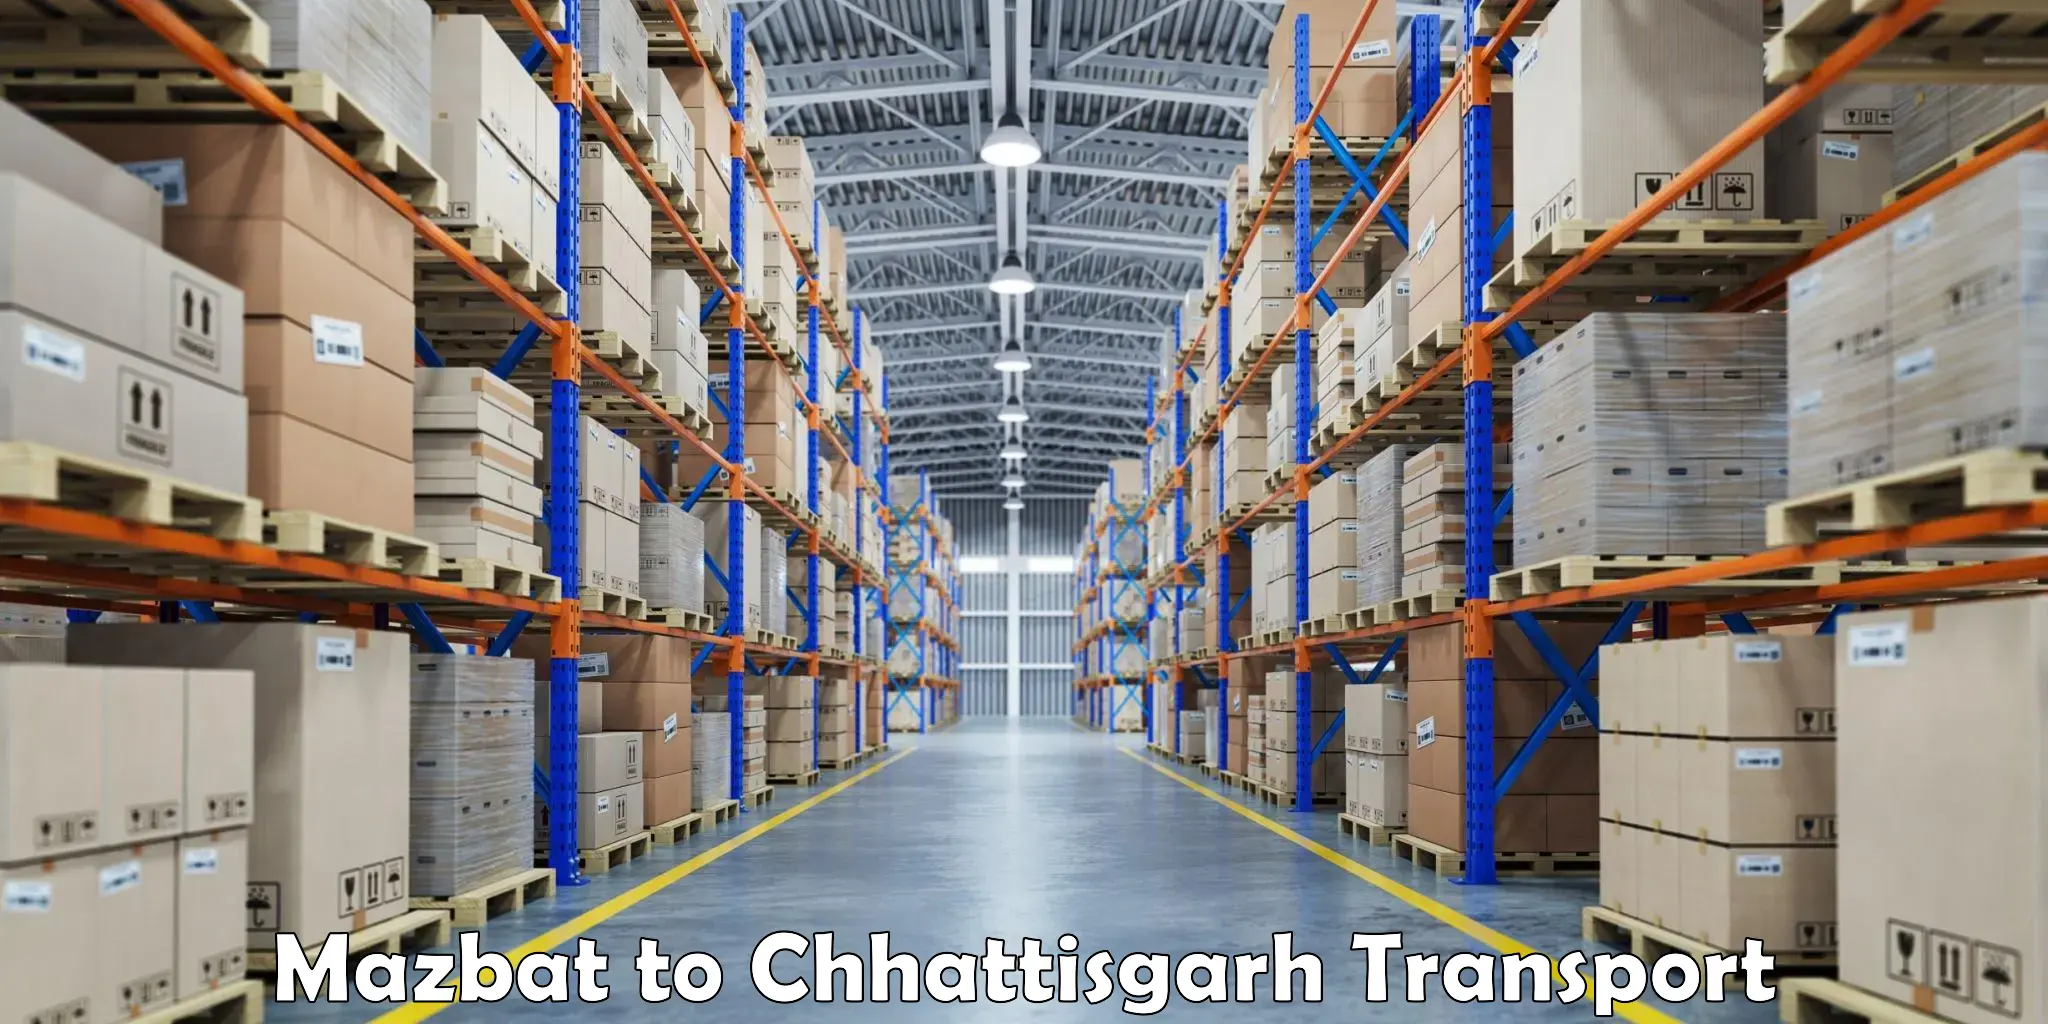 Express transport services Mazbat to Raigarh Chhattisgarh